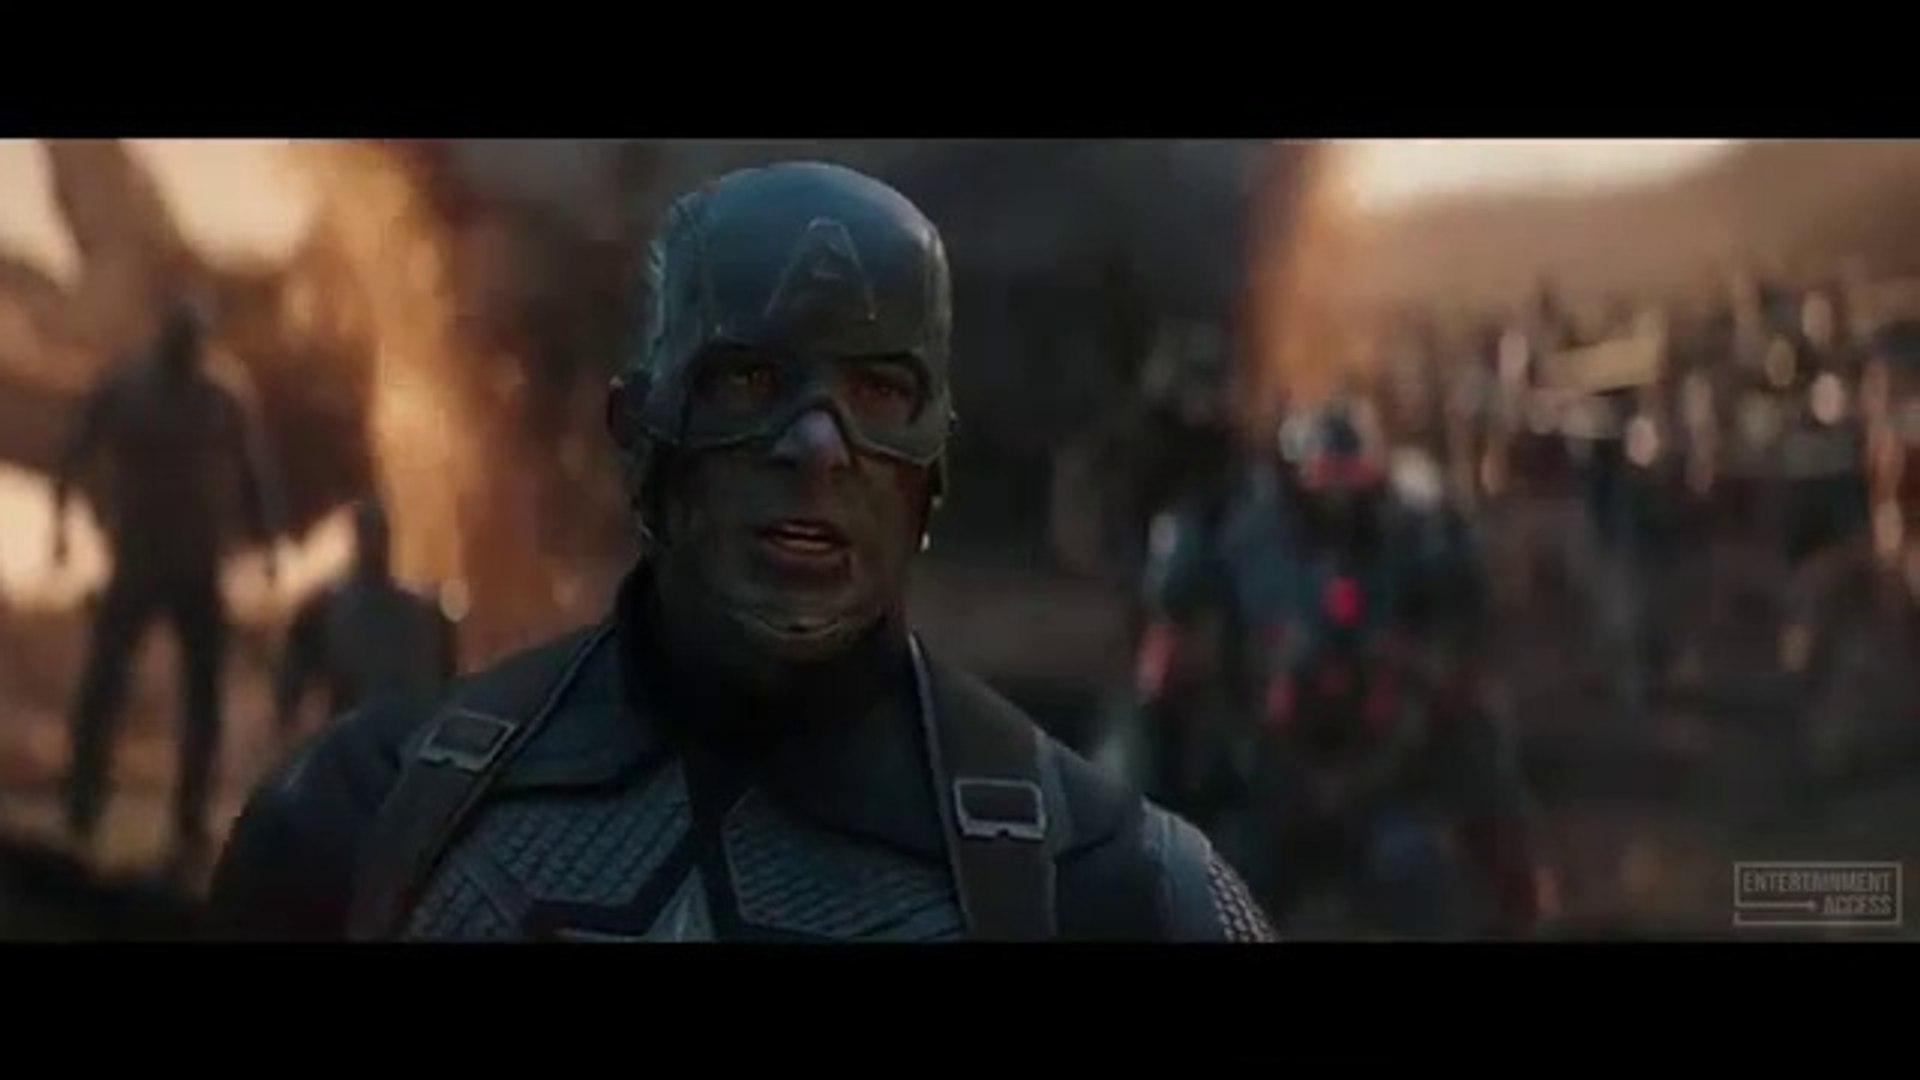 Avengers Assemble in Final Fight Scene - AVENGERS 4: ENDGAME (2019) Movie  Clip - video Dailymotion